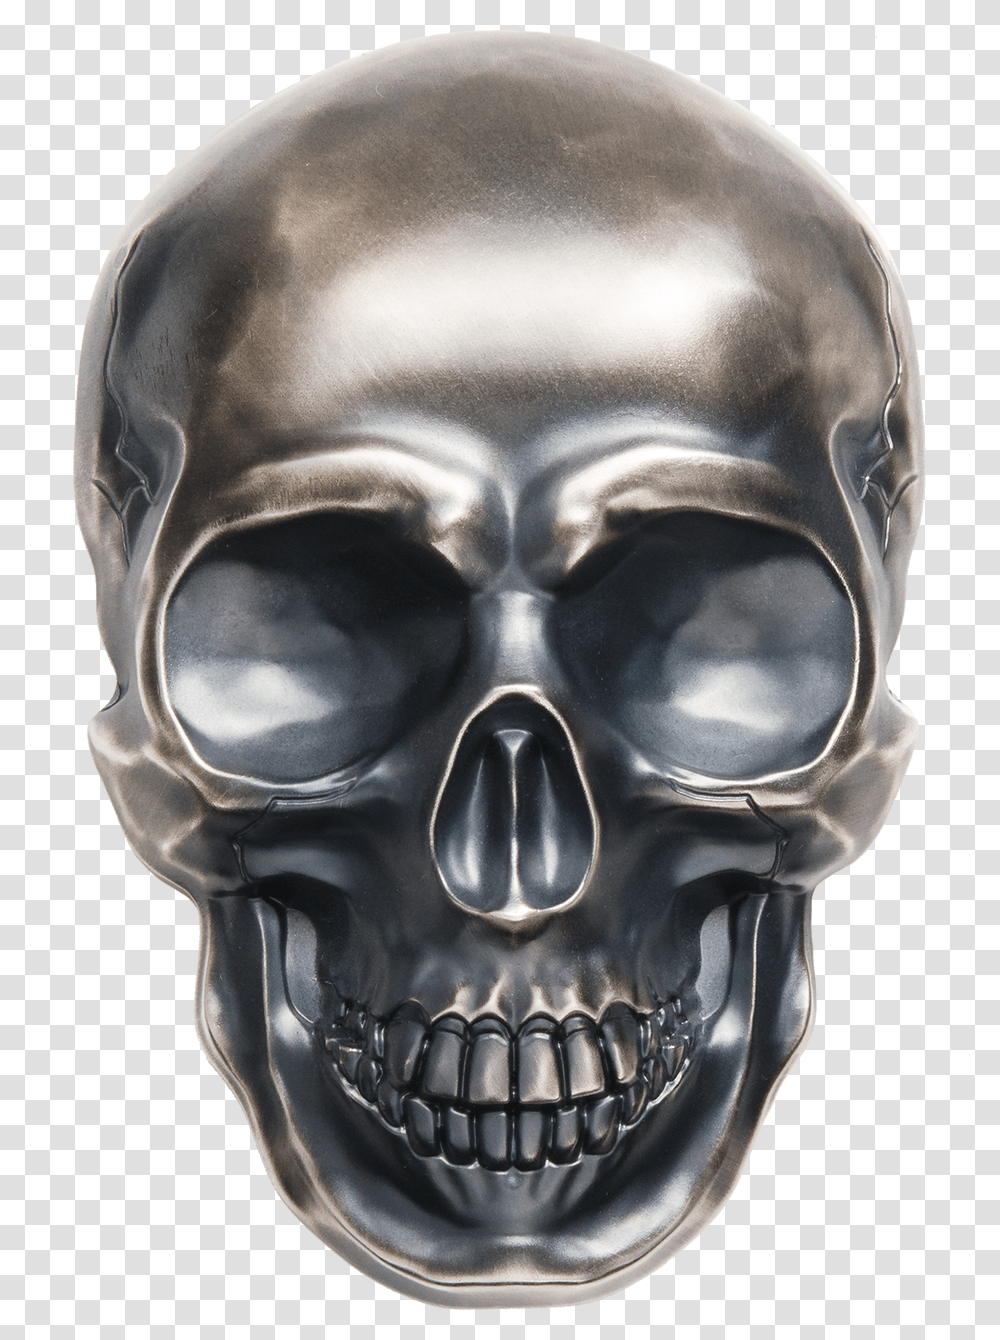 2017 12 Kilo Pure Silver Coin Palau Big Skull, Helmet, Apparel, Head Transparent Png